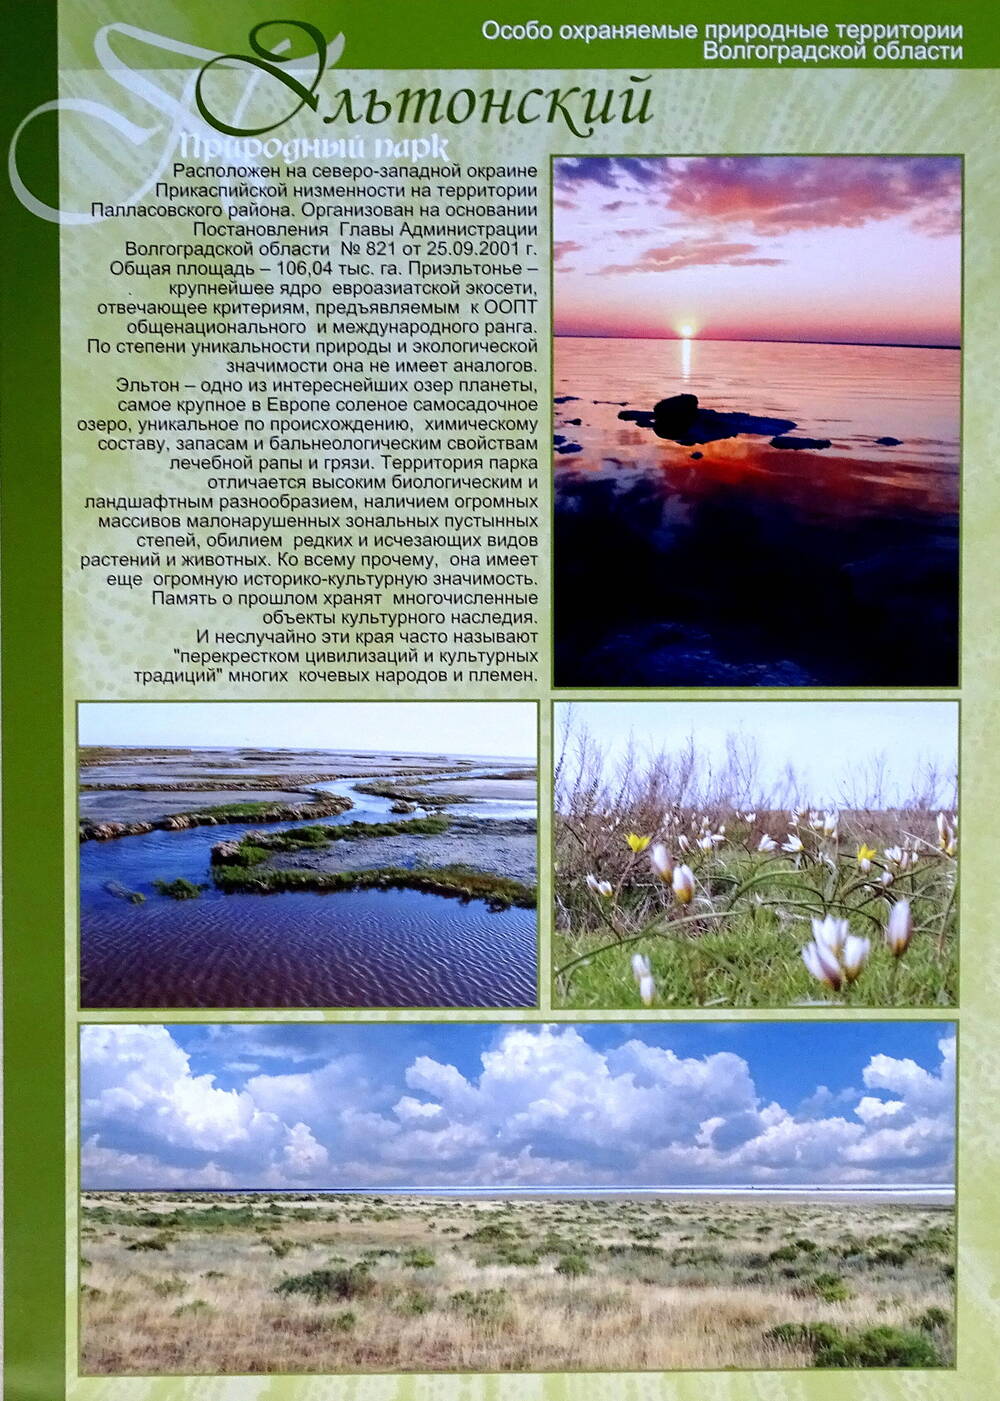 Лист информационный  «Особо охраняемые природные территории Волгоградской области» «Эльтонский Природный парк».